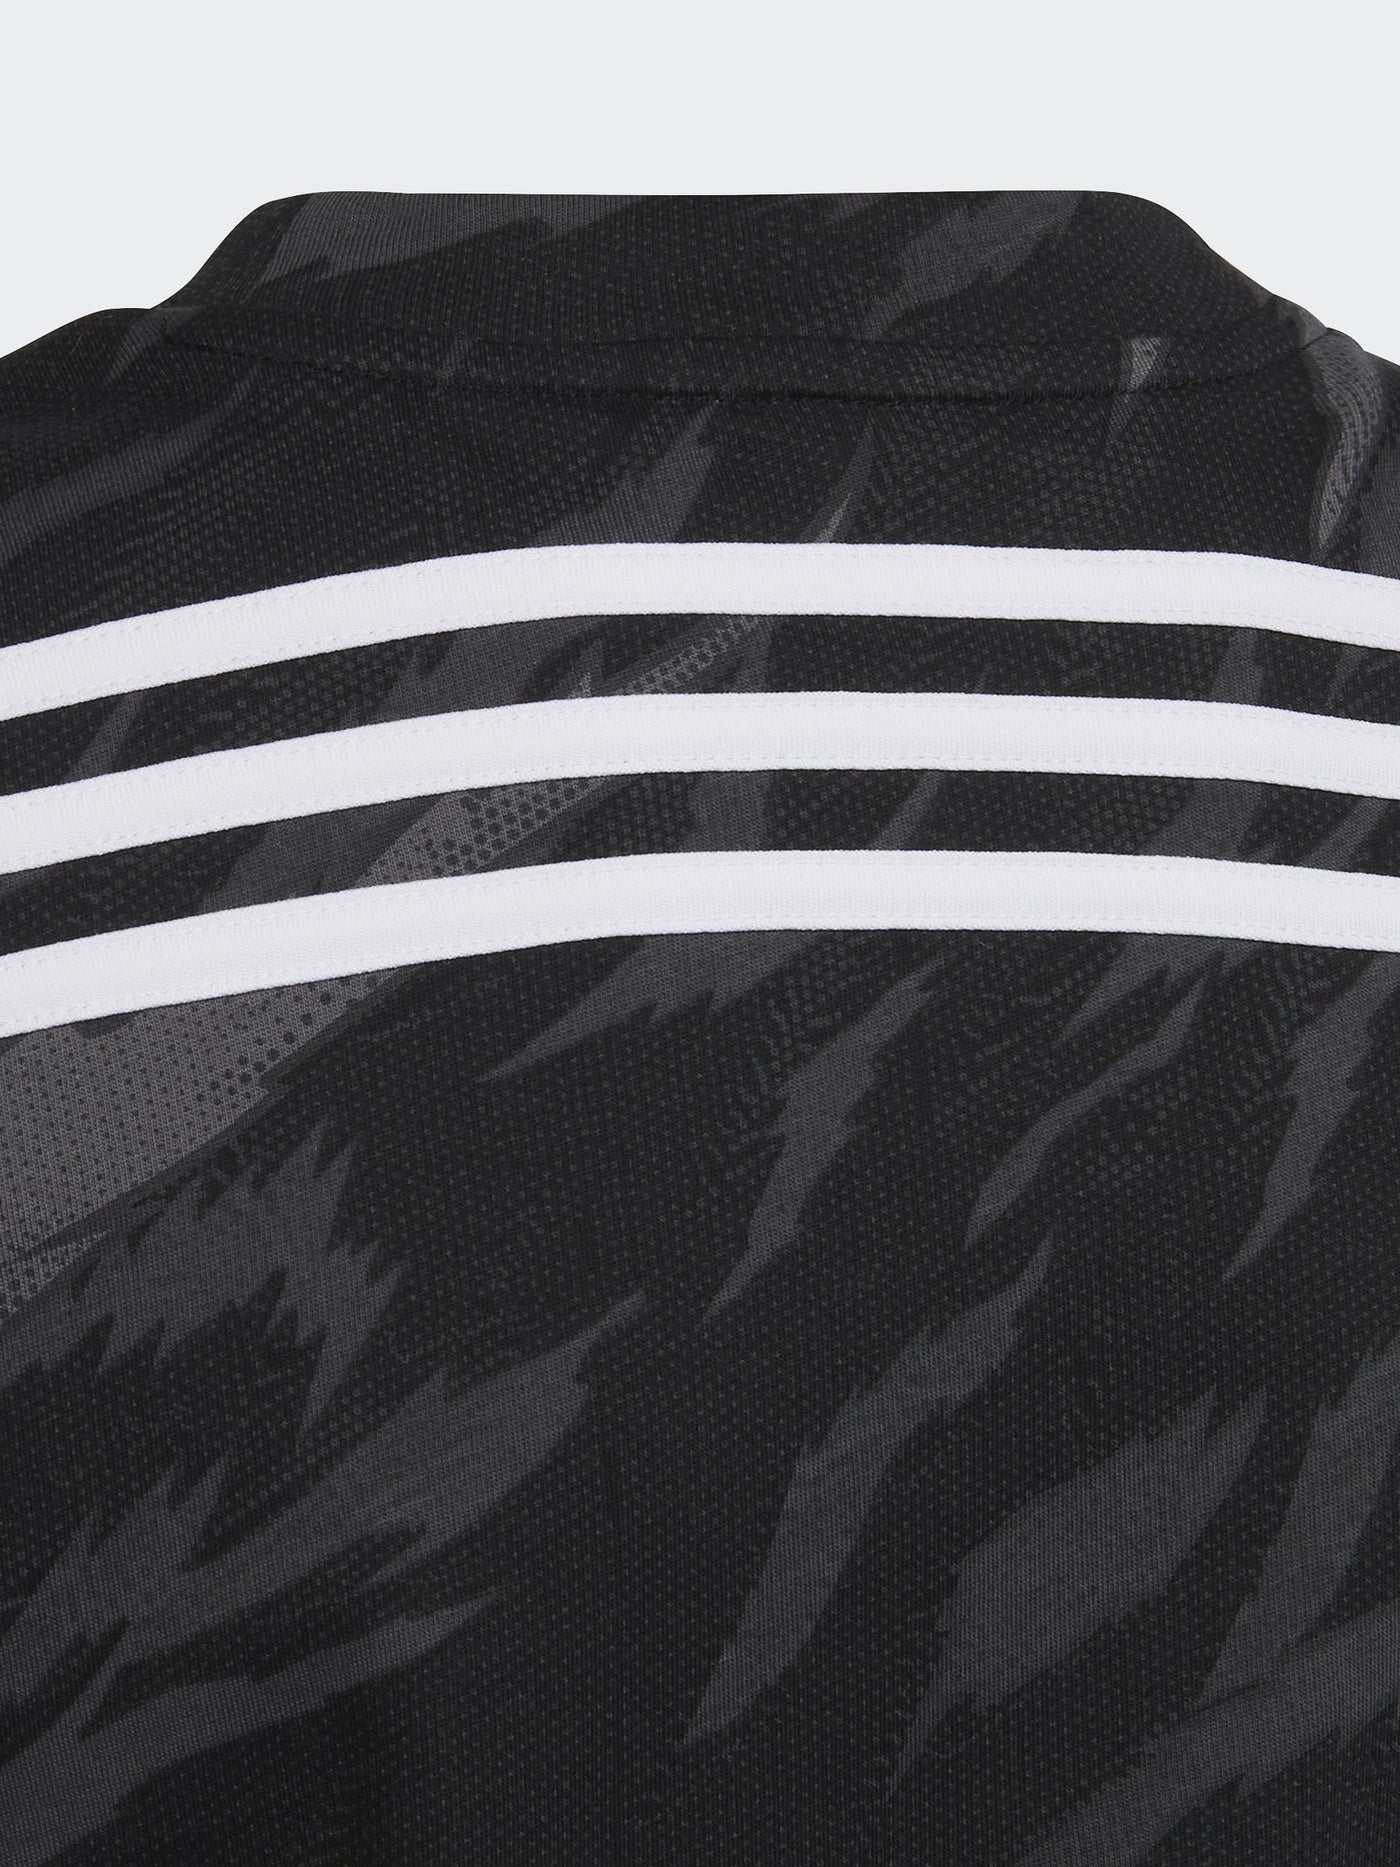 adidas Junior Boys Future Icons 3-Stripes T-Shirt